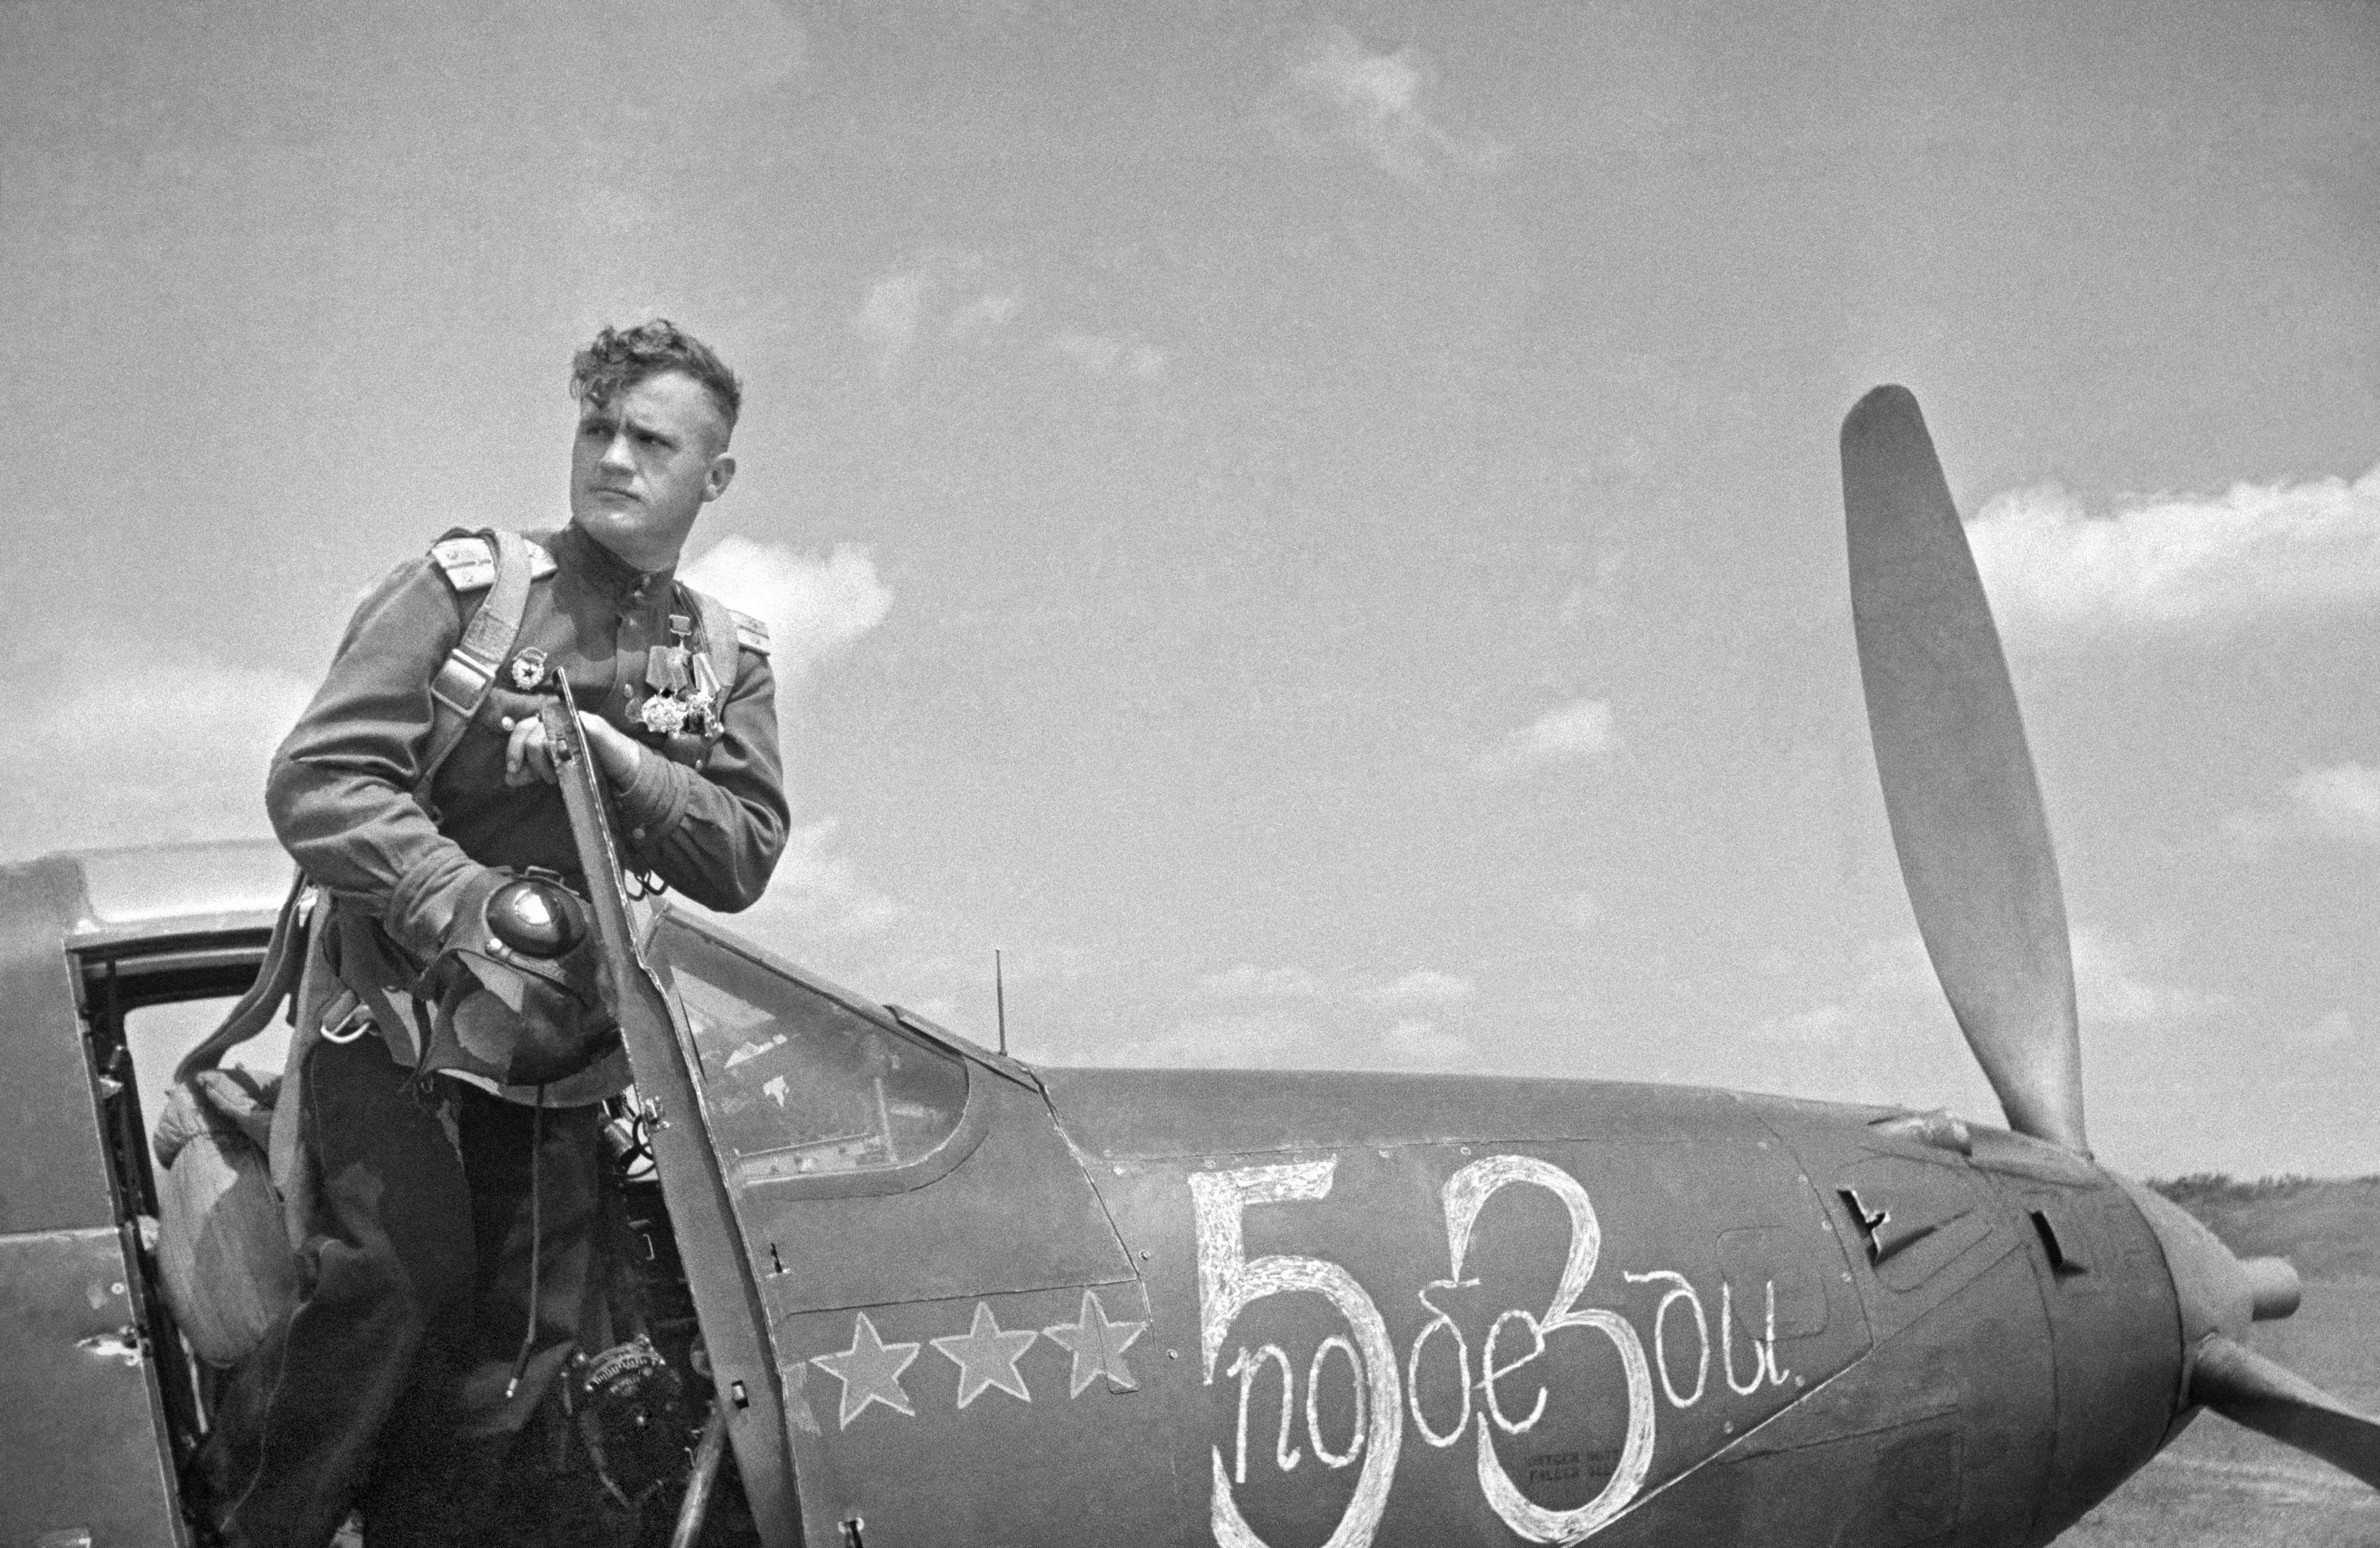 Николай Гулаев, летчик-истребитель, дважды Герой Советского Союза гвардии капитан.